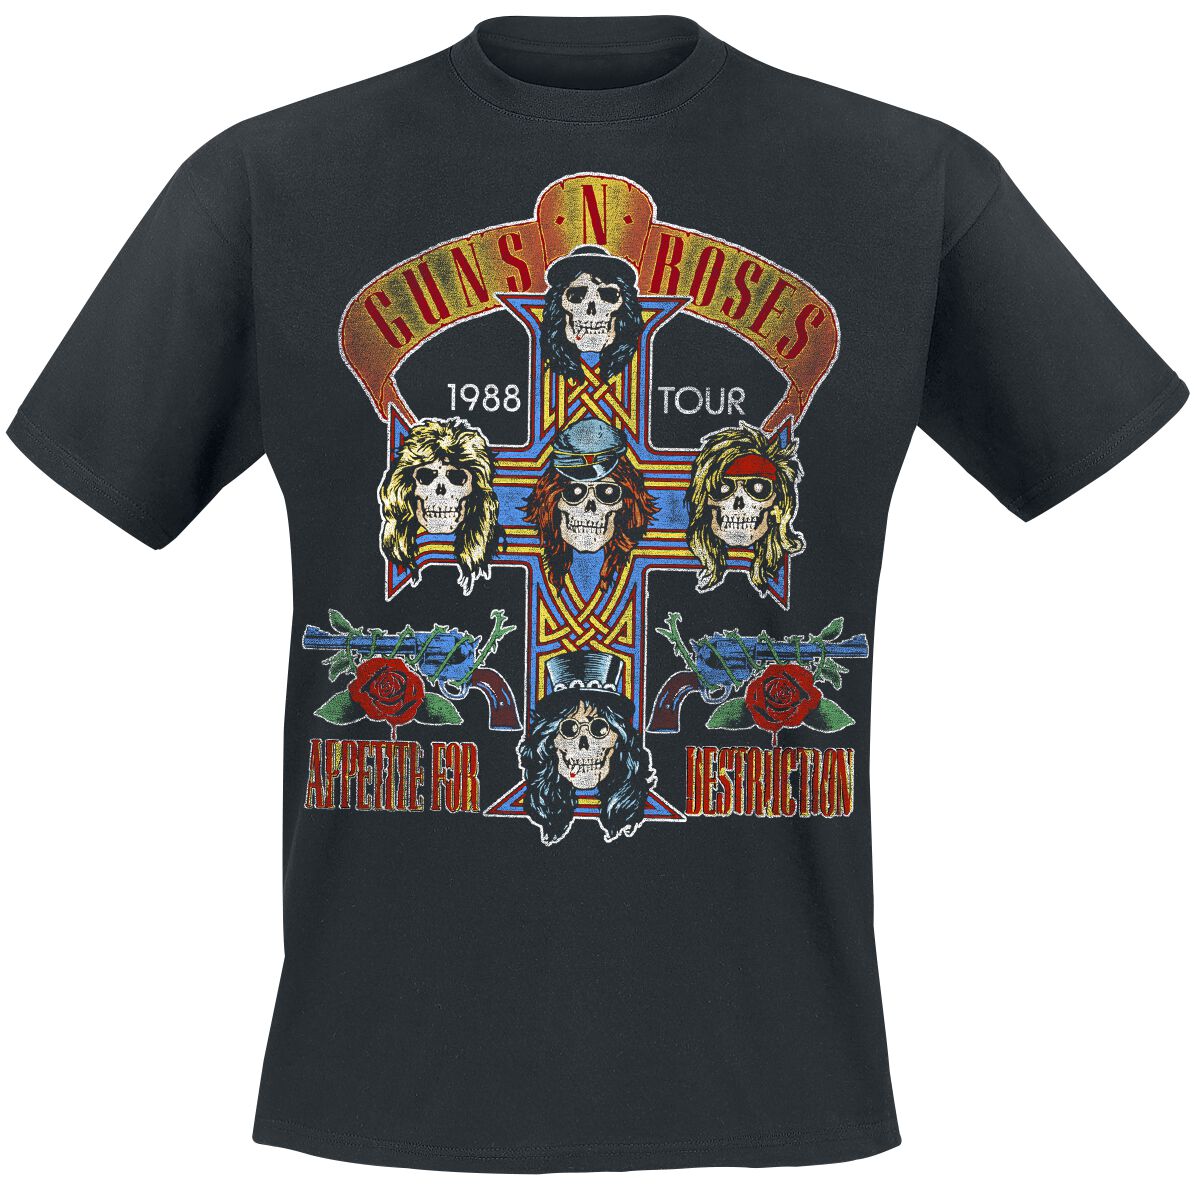 Guns N` Roses T-Shirt - Tour 1988 - S bis 5XL - für Männer - Größe 5XL - schwarz  - Lizenziertes Merchandise!